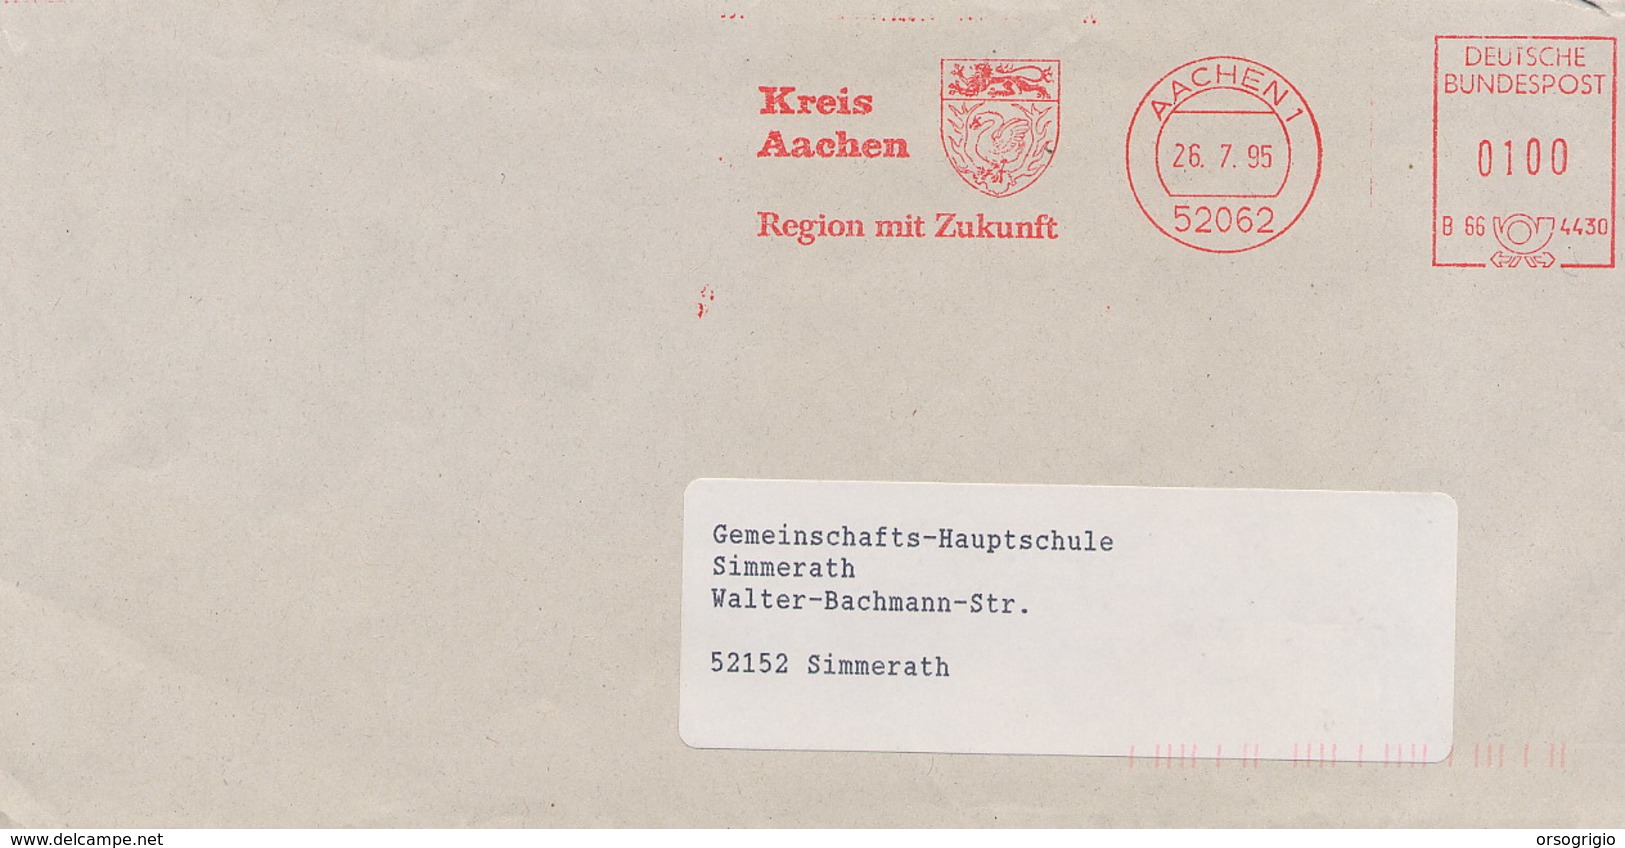 GERMANIA - AACHEN  -  KREIS  -  BLASONE  -  LEONE  LION - Enveloppes